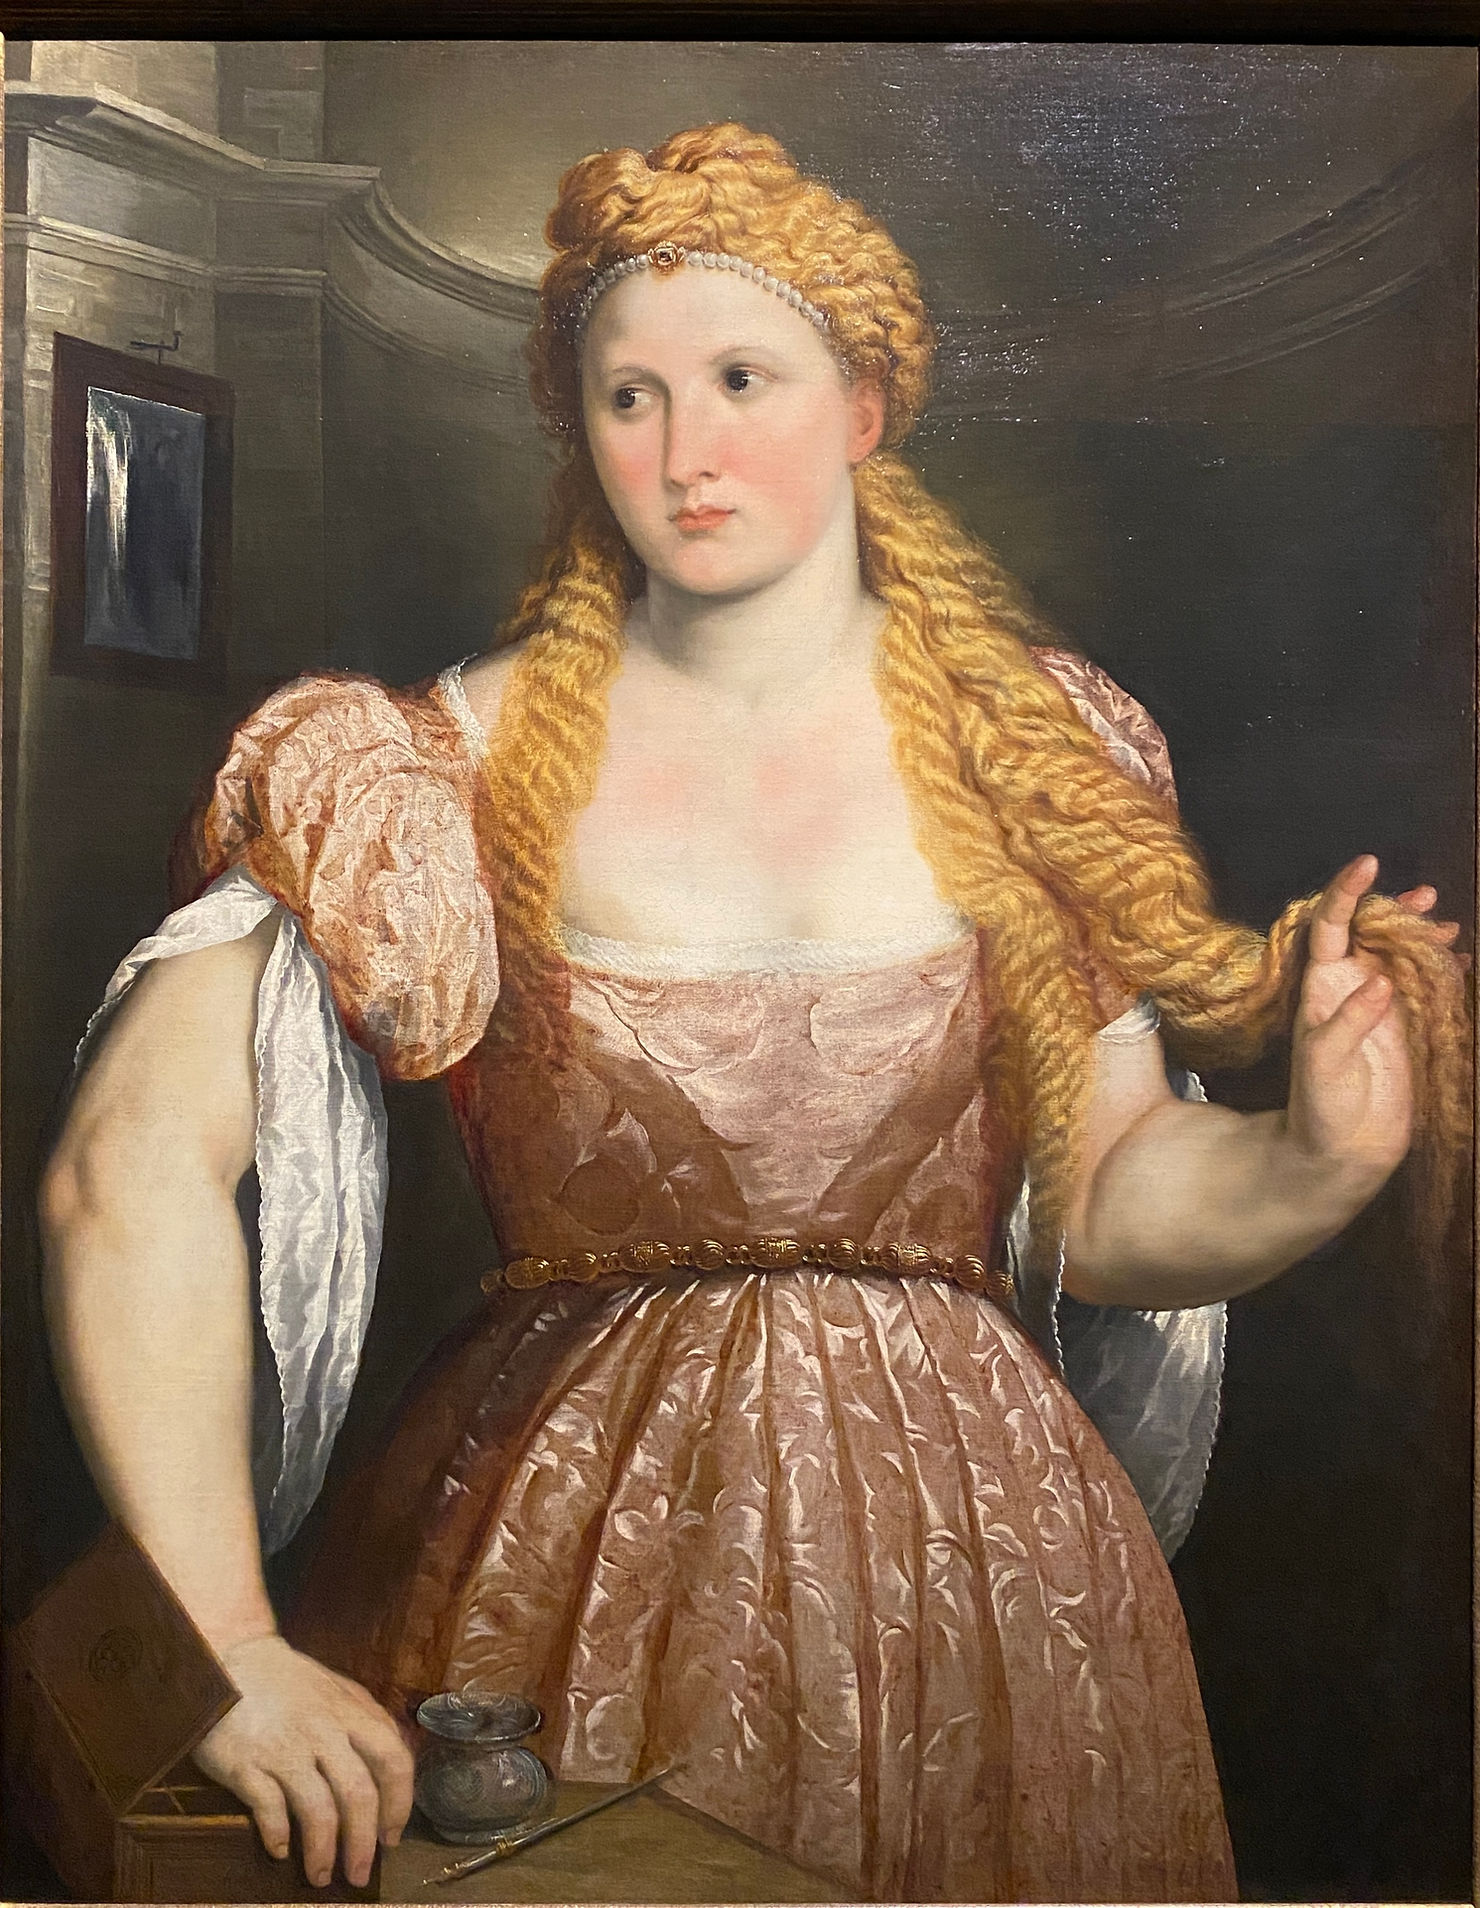 Paris Bordon (Treviso, 1500 – Venezia, 1571) “Ritratto di giovane donna” 1545 – 1550 circa, olio su tela, cm 102x81, Kunthistorisches Museum di Vienna.